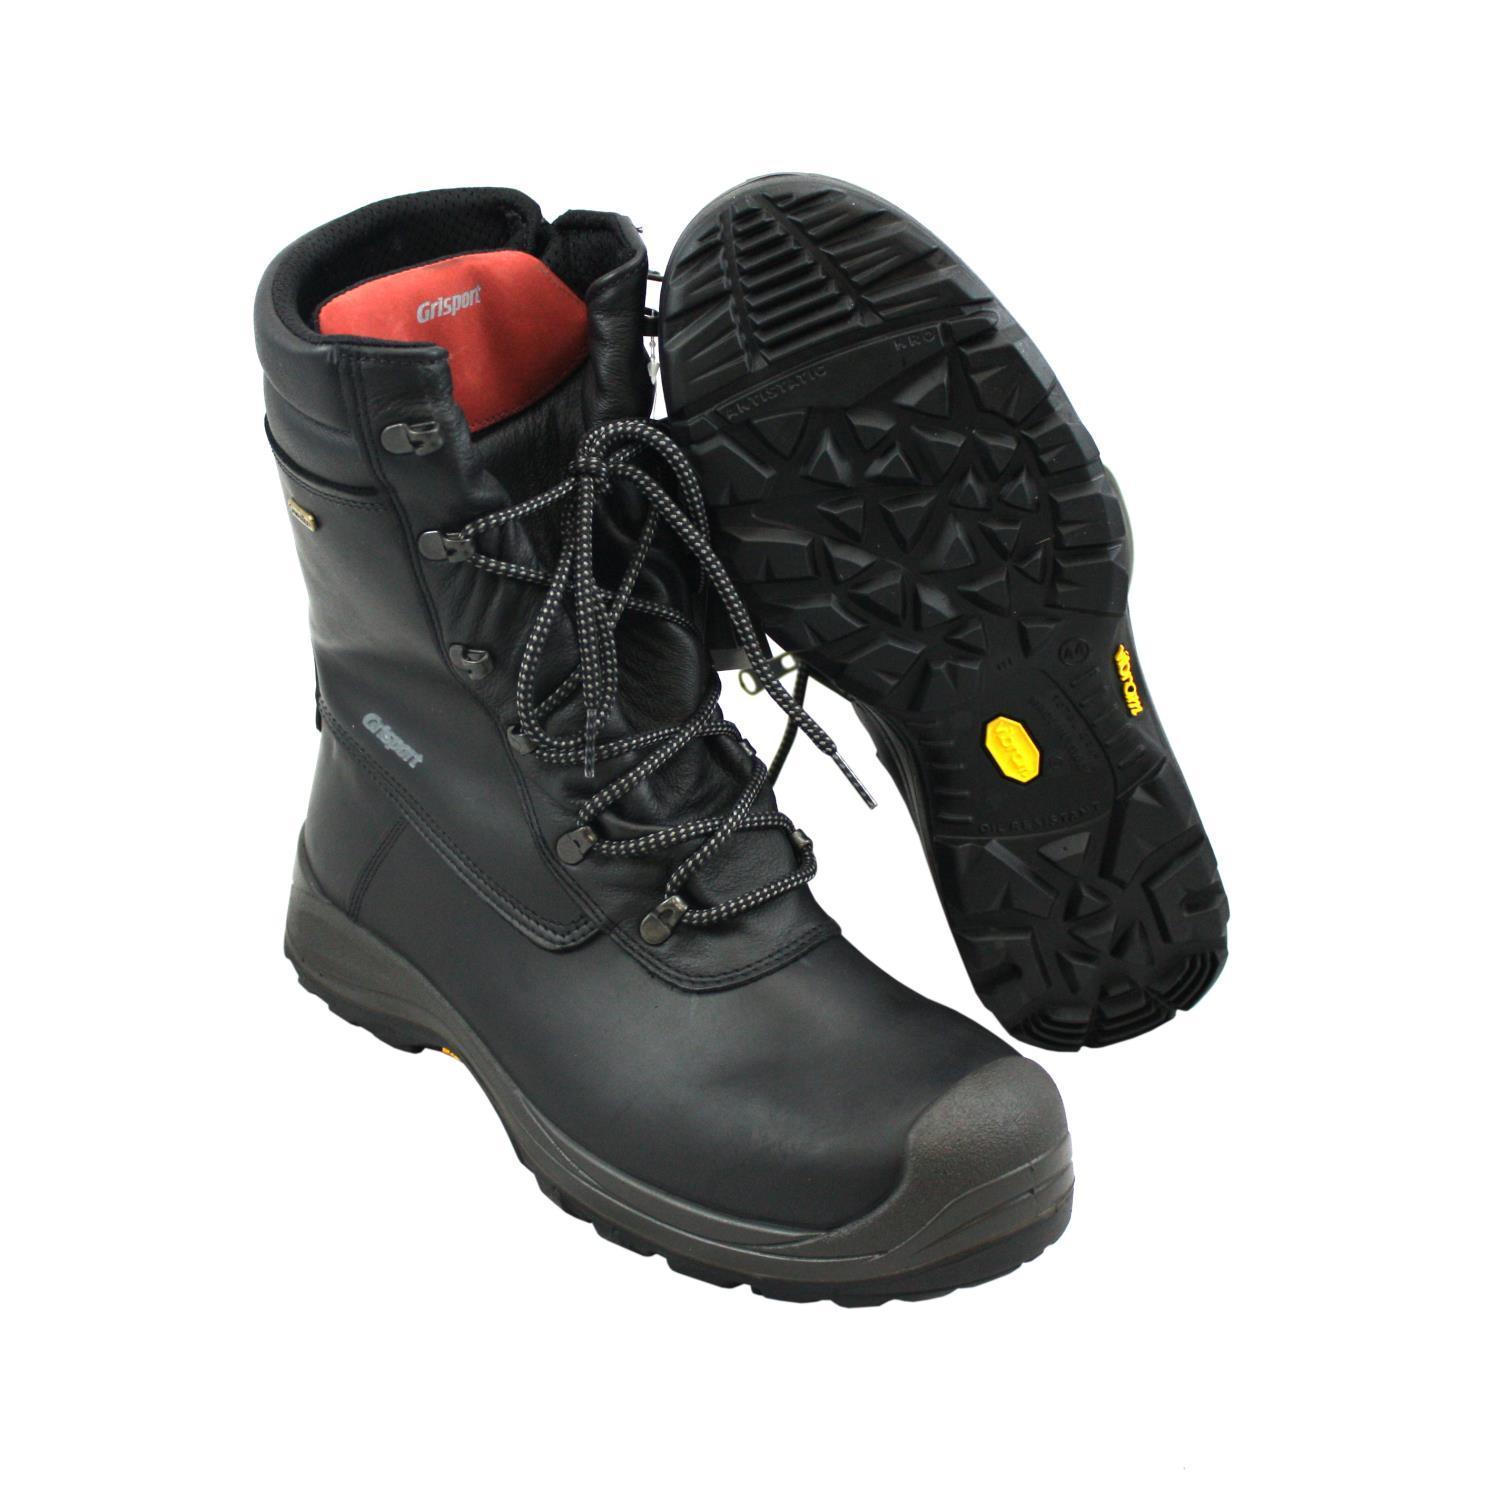 grisport safety boots ireland